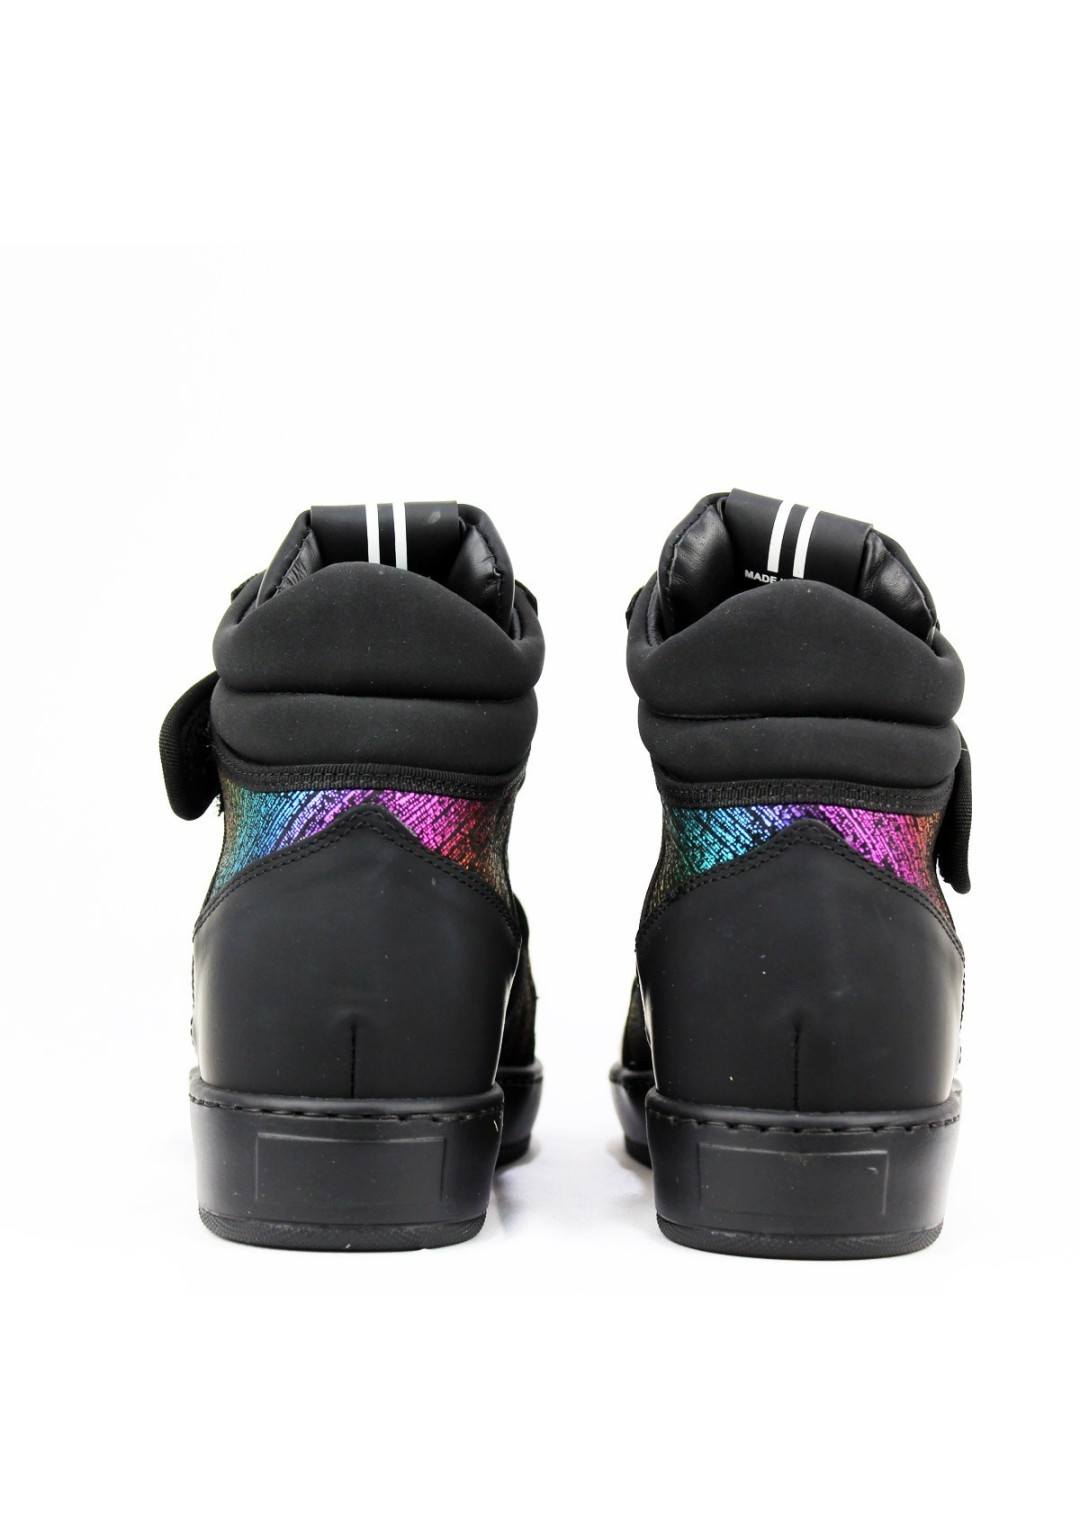 Thoms nicoll - Sneaker Alta - Donna - 389